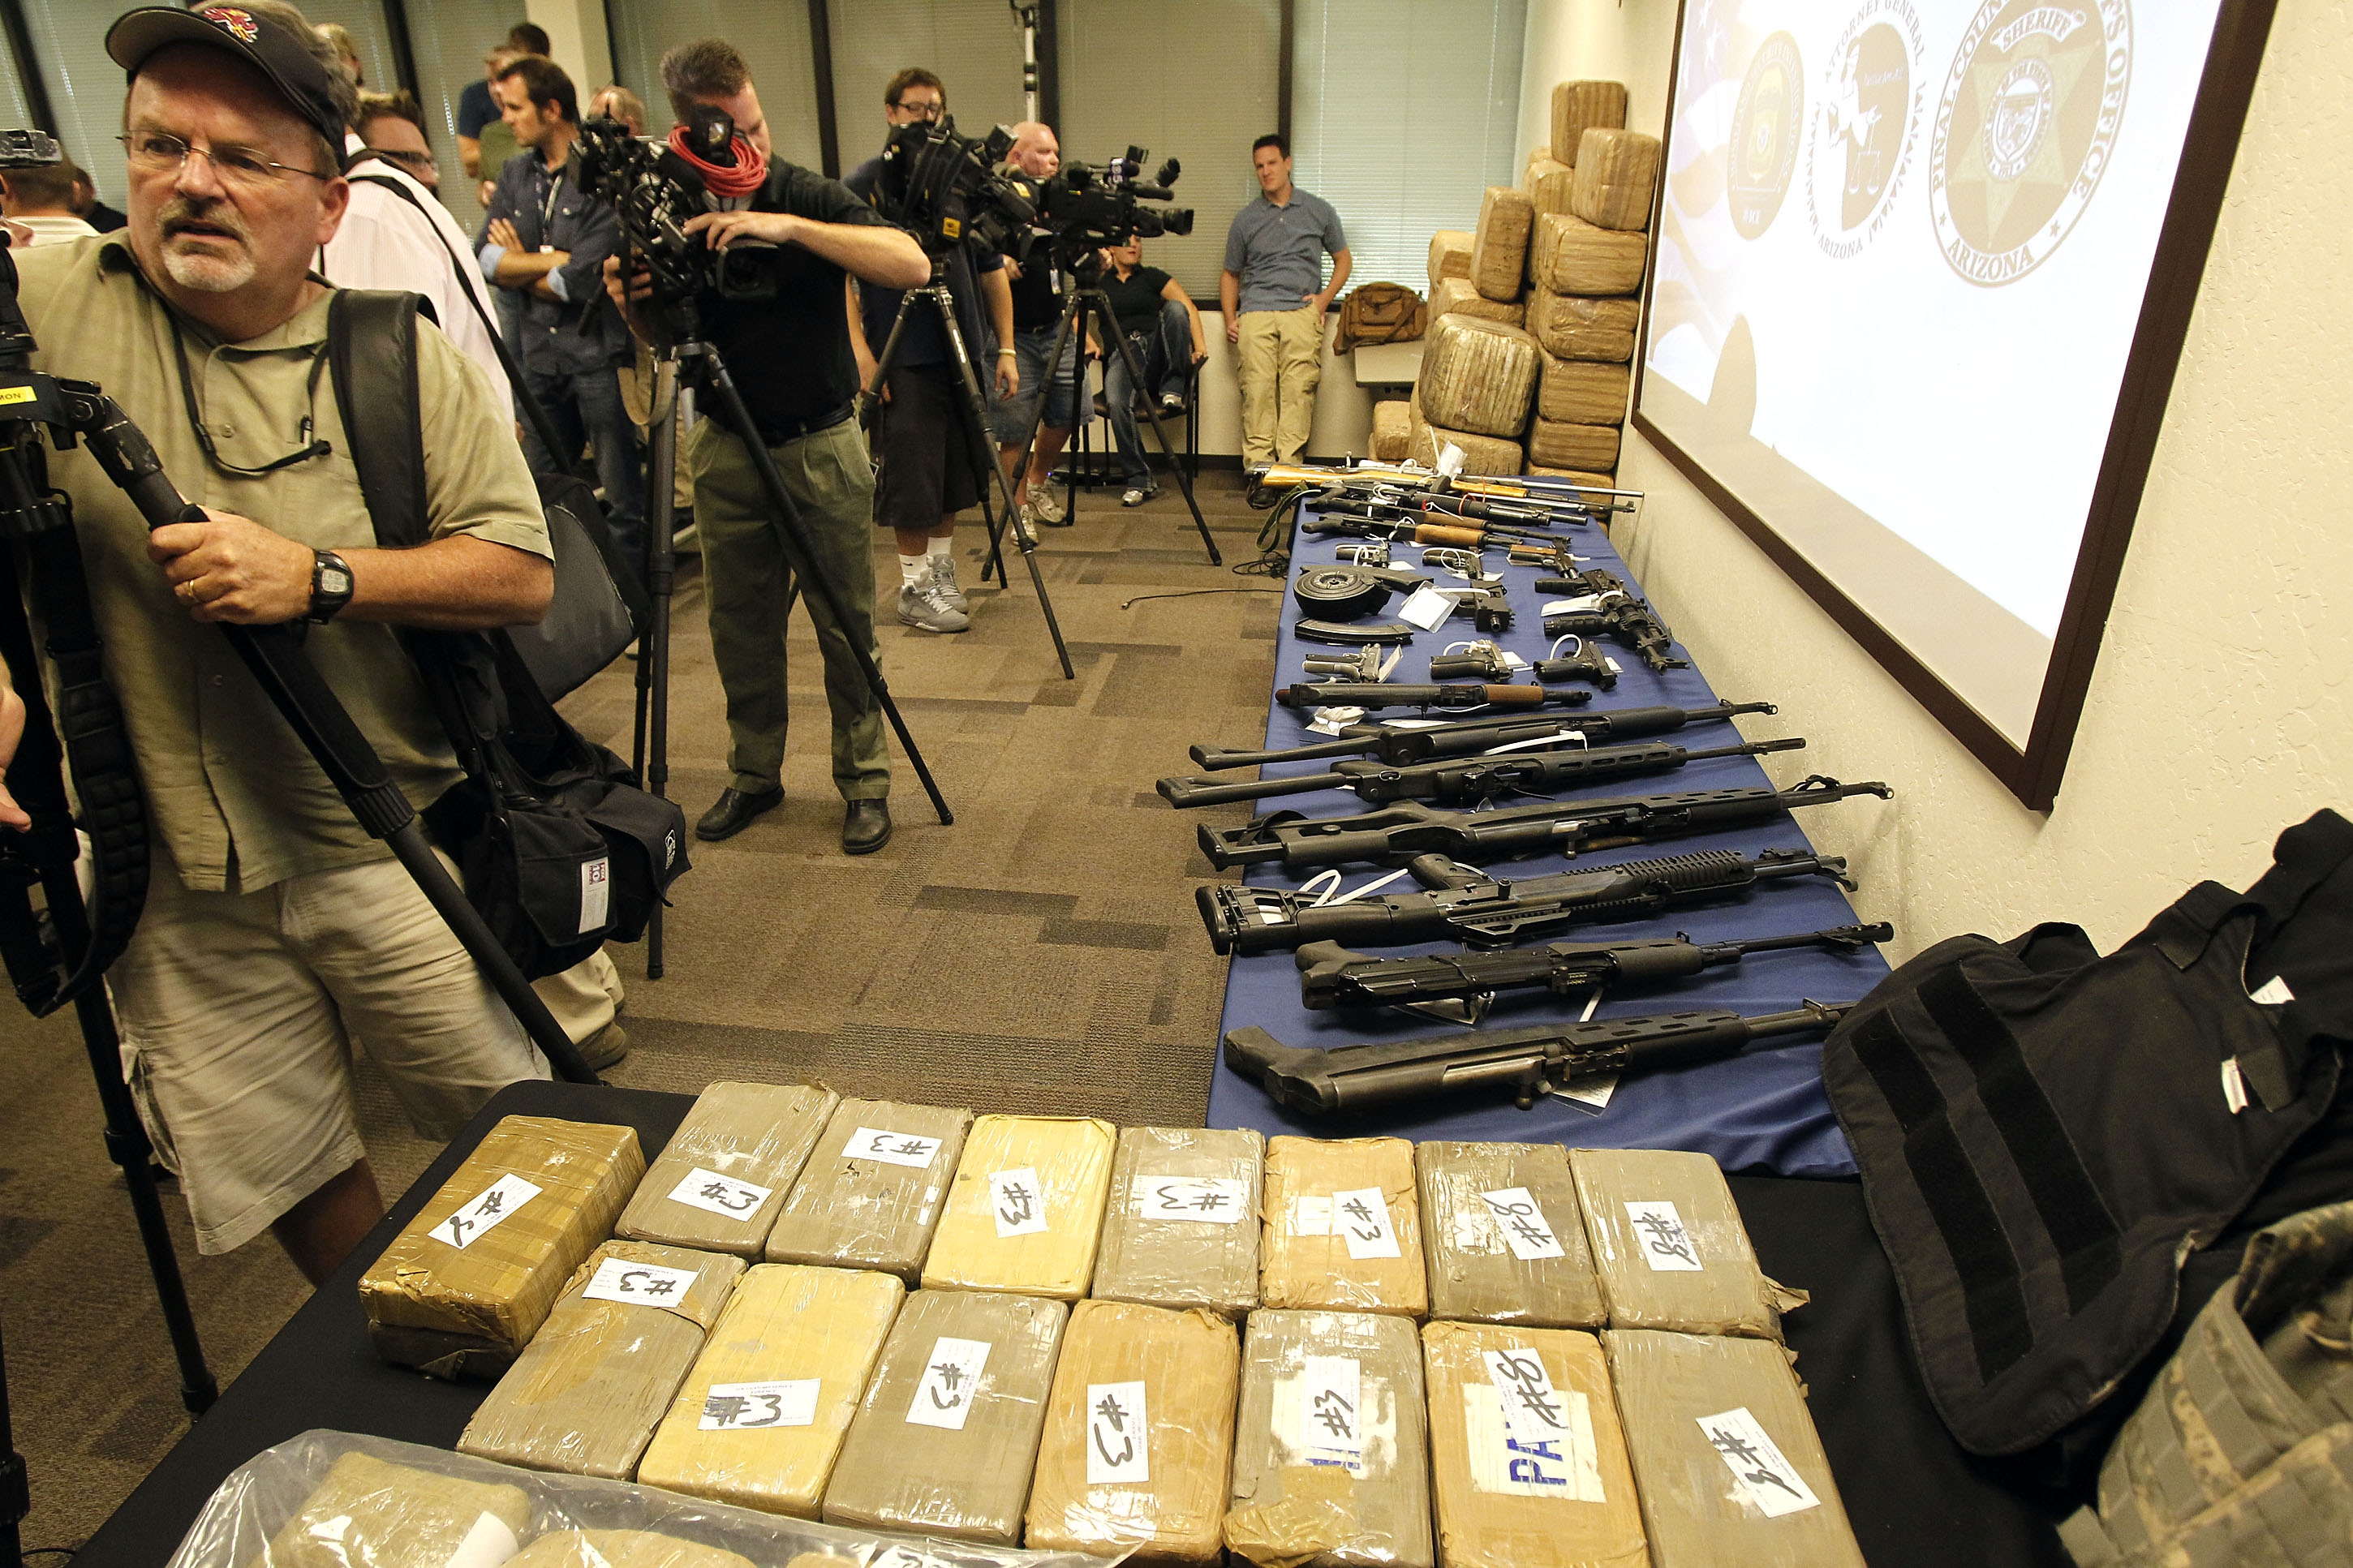 Tillslaget har skapat stor uppmärksamhet i USA. Här visas de konfiskerade vapnen och narkotikan upp.